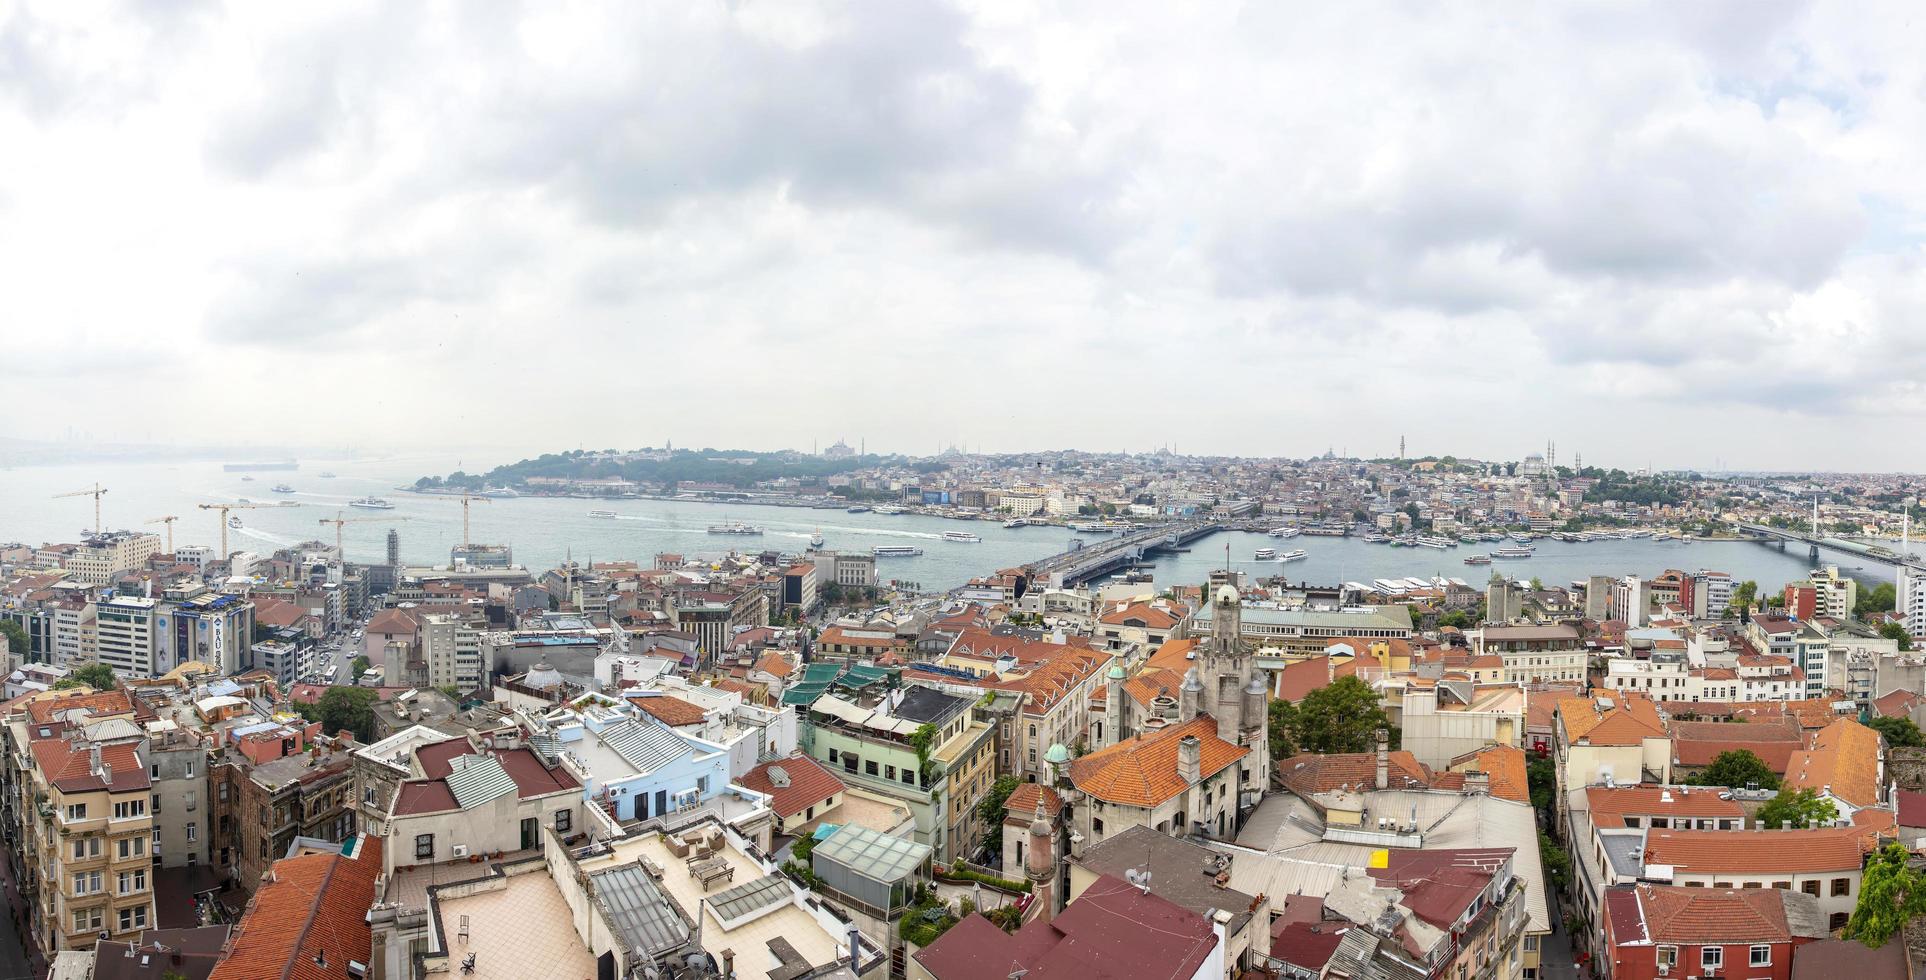 Estambul, Turquía, 21 de junio de 2019 - Vista aérea de casas y edificios públicos en Estambul, Turquía. Estambul es una ciudad importante de Turquía con más de 15 millones de habitantes. foto